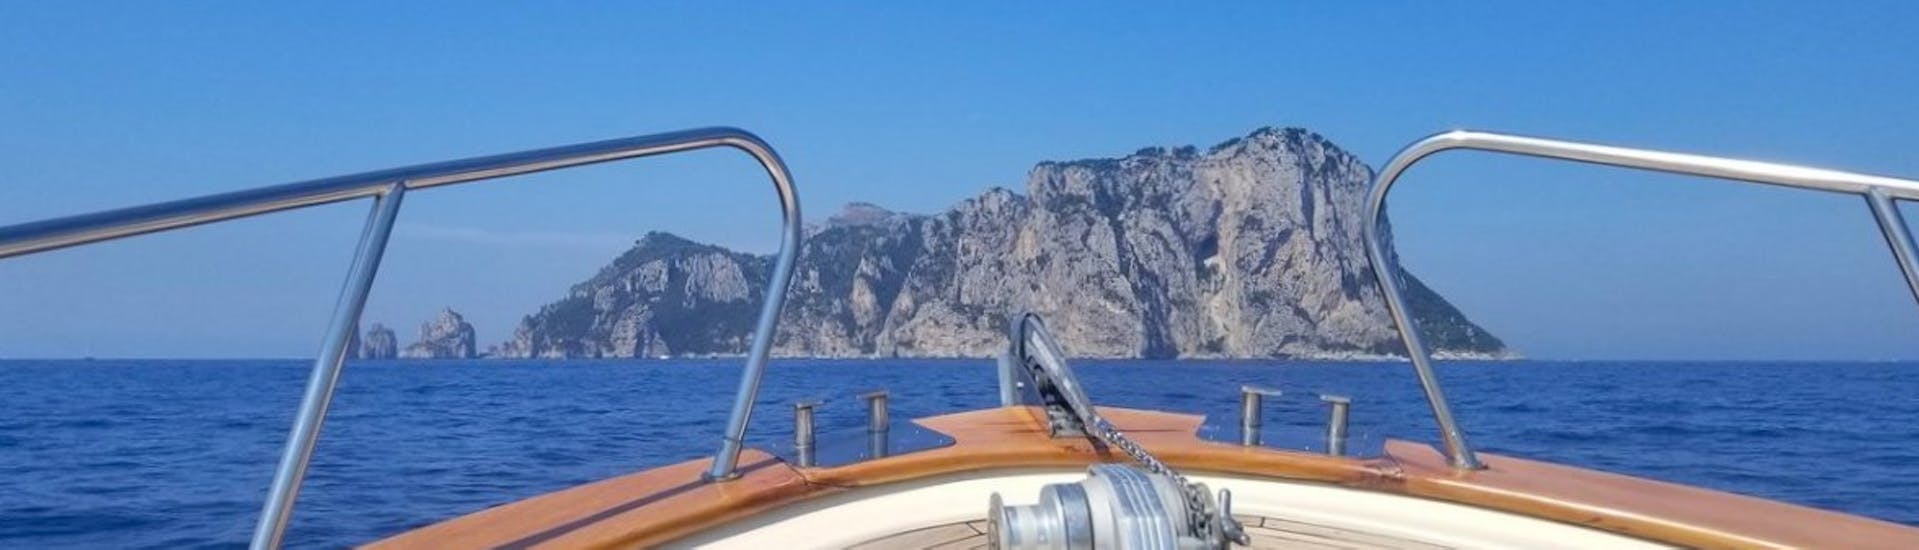 Gita in barca privata a Capri e le sue grotte con sosta per nuotare.